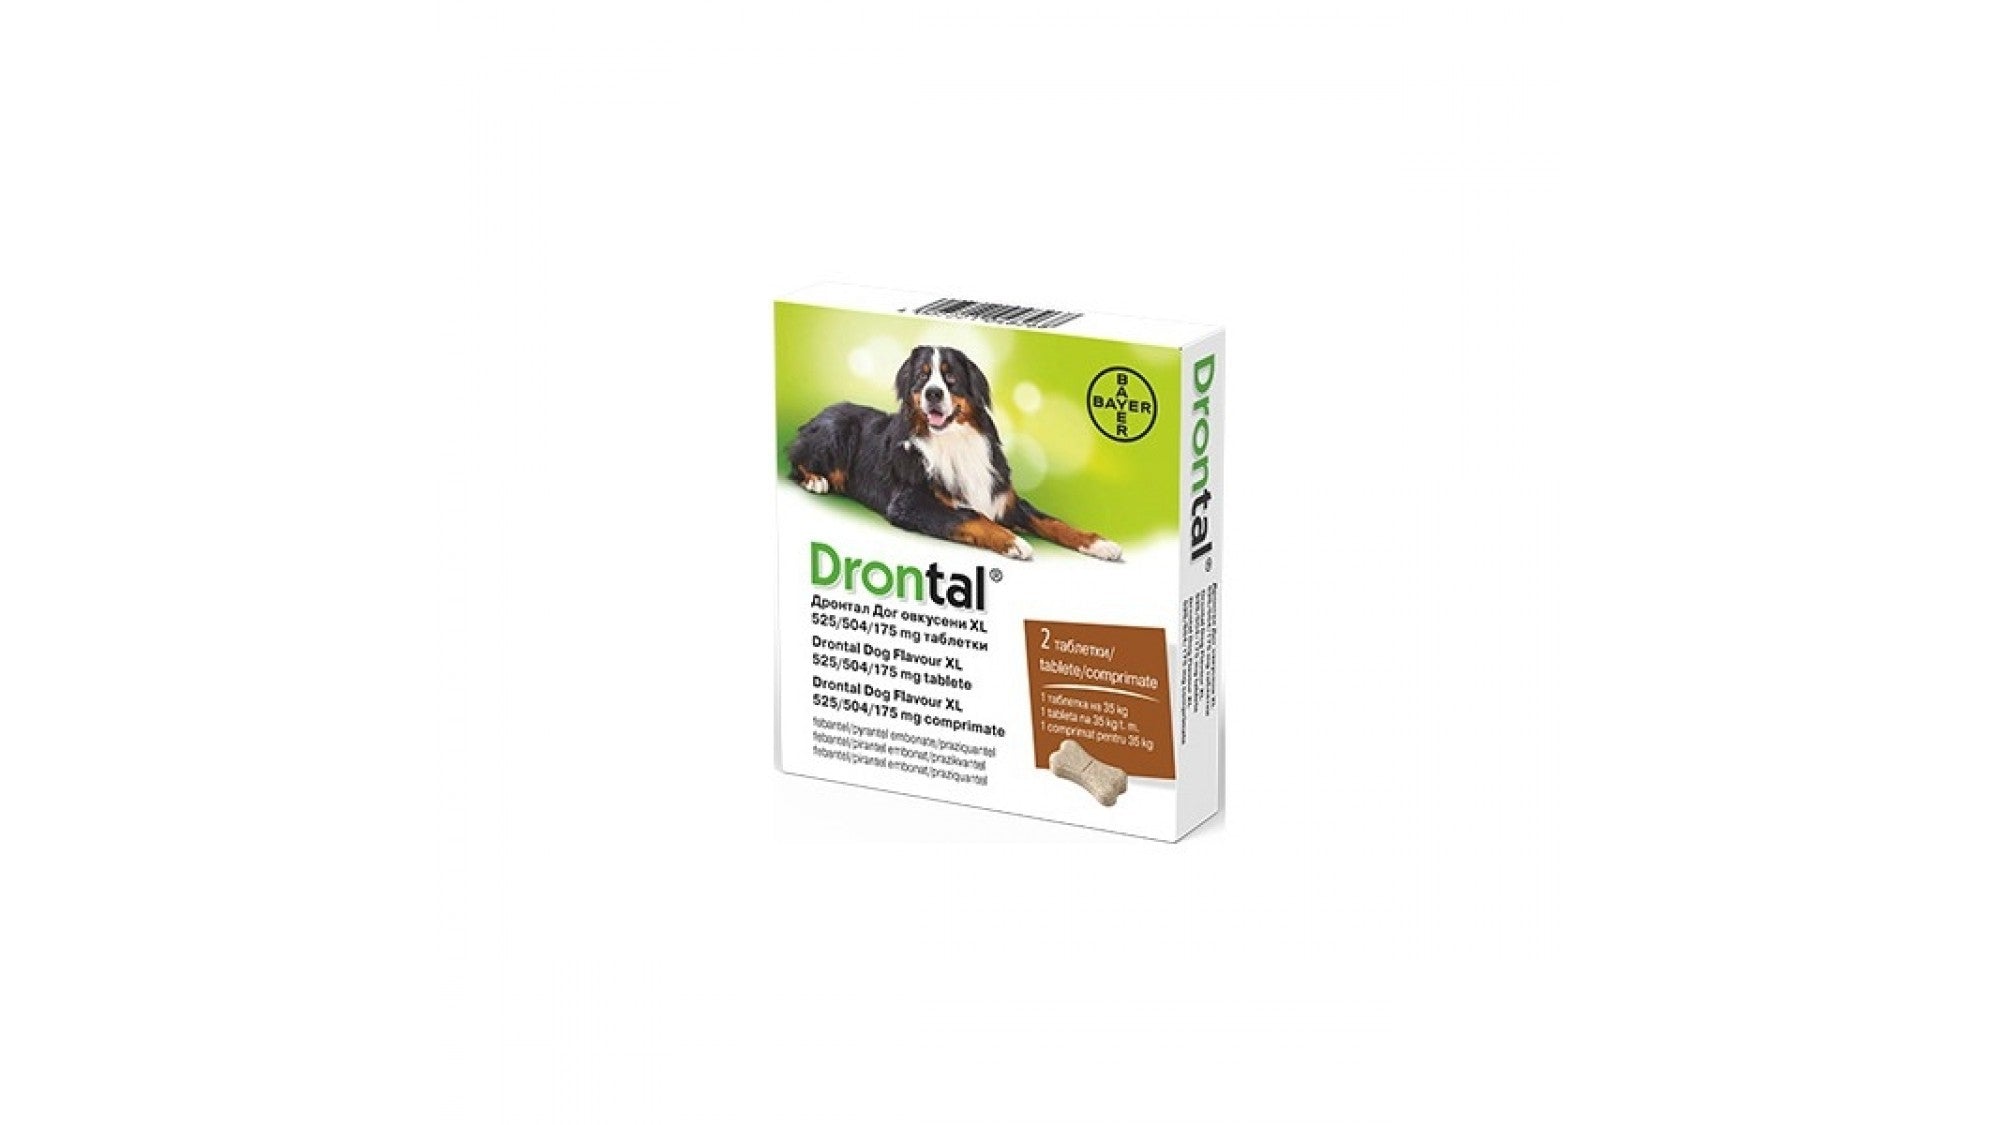 Drontal Dog Flavour XL 525/504/175 MG, pentru caini, cutie x 2 comprimate